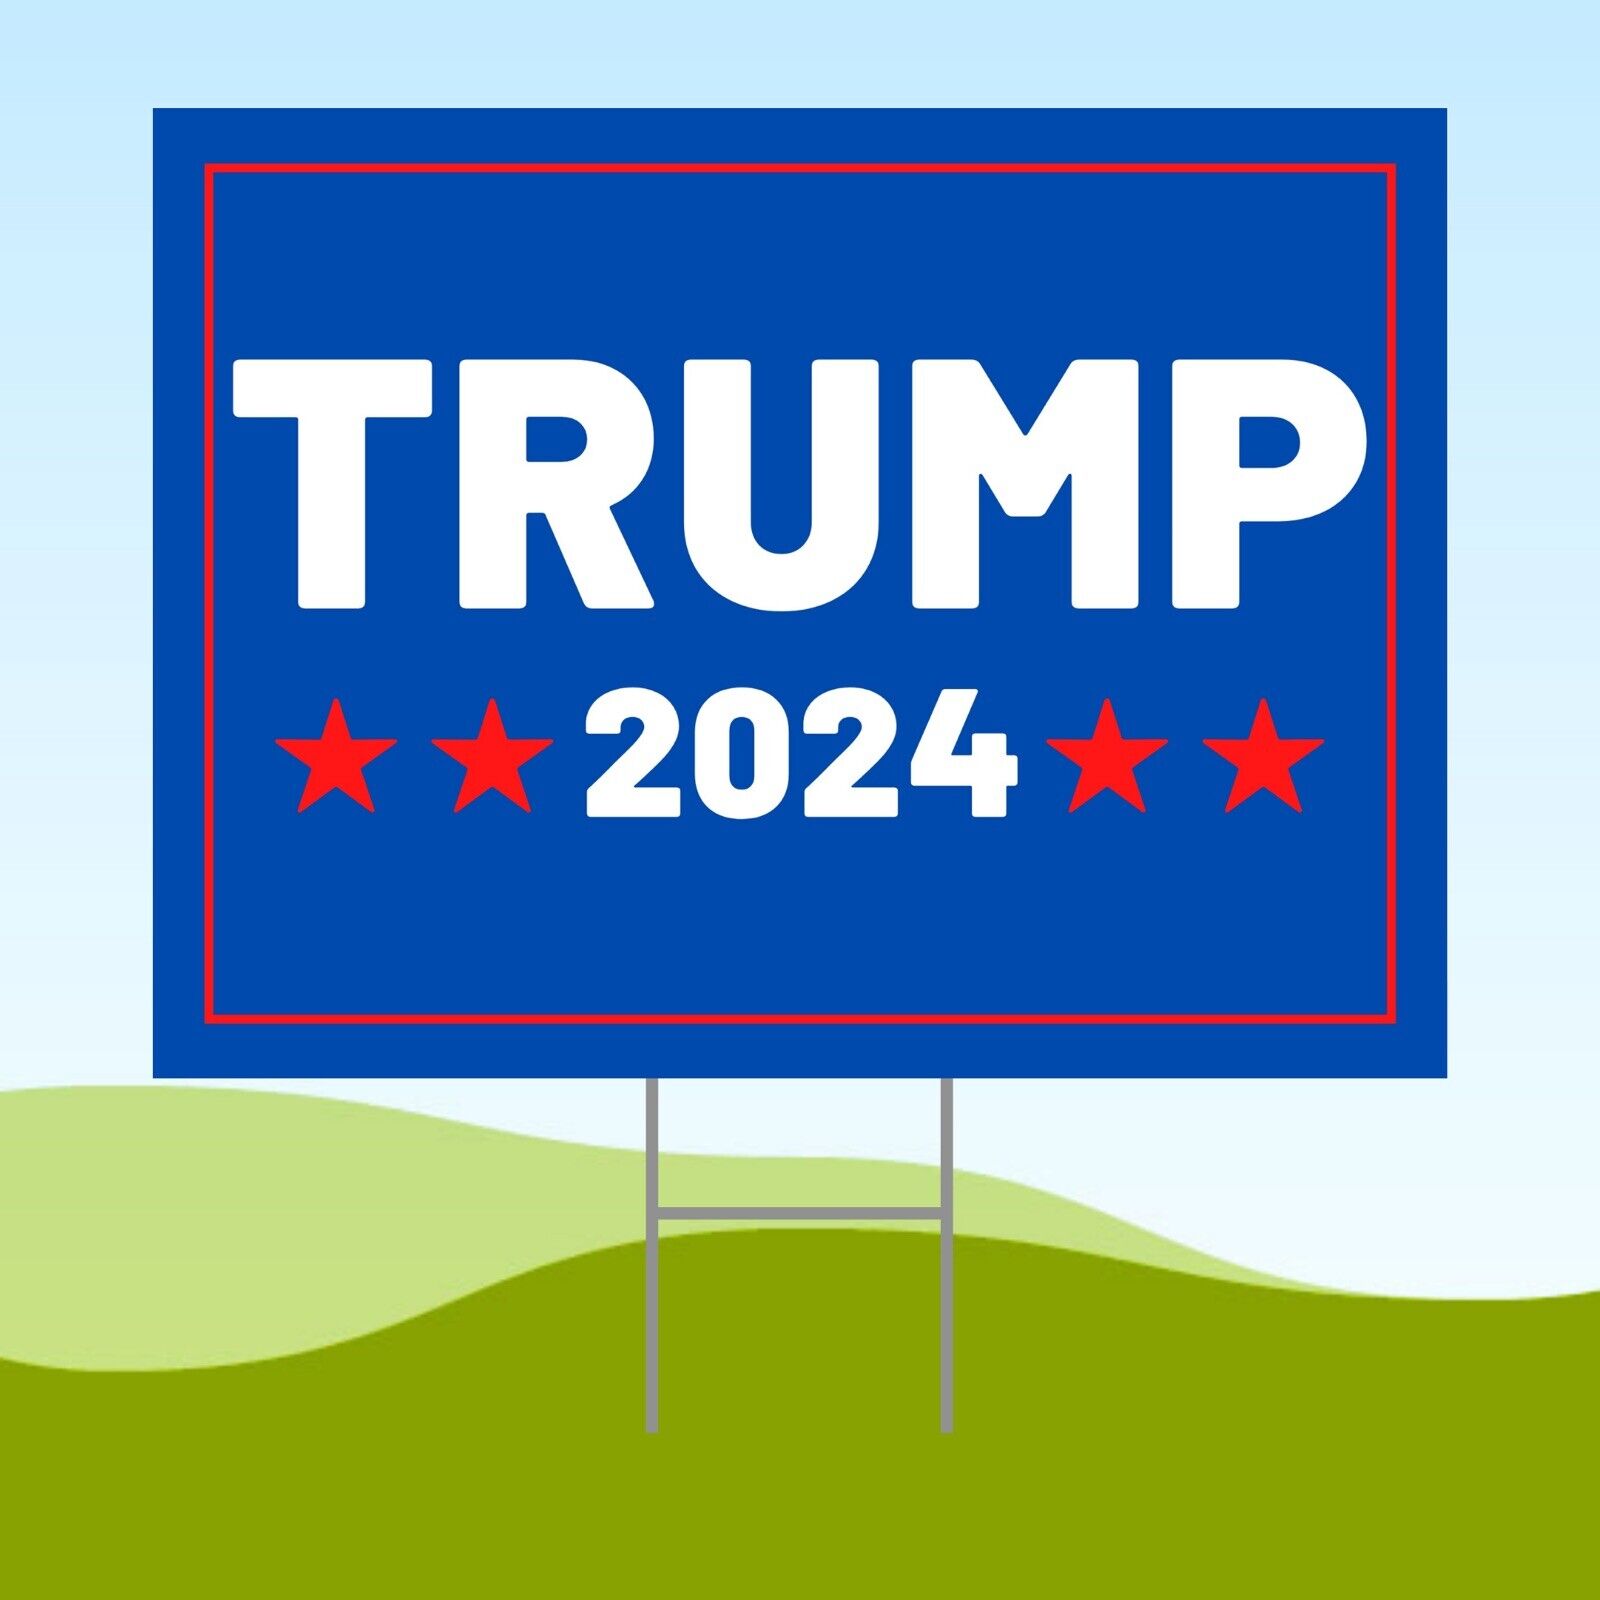 TRUMP 2024 18x24 Yard Sign Corrugated Plastic Bandit Lawn ELECTION VOTE No Biden Geweldige goedkope deals